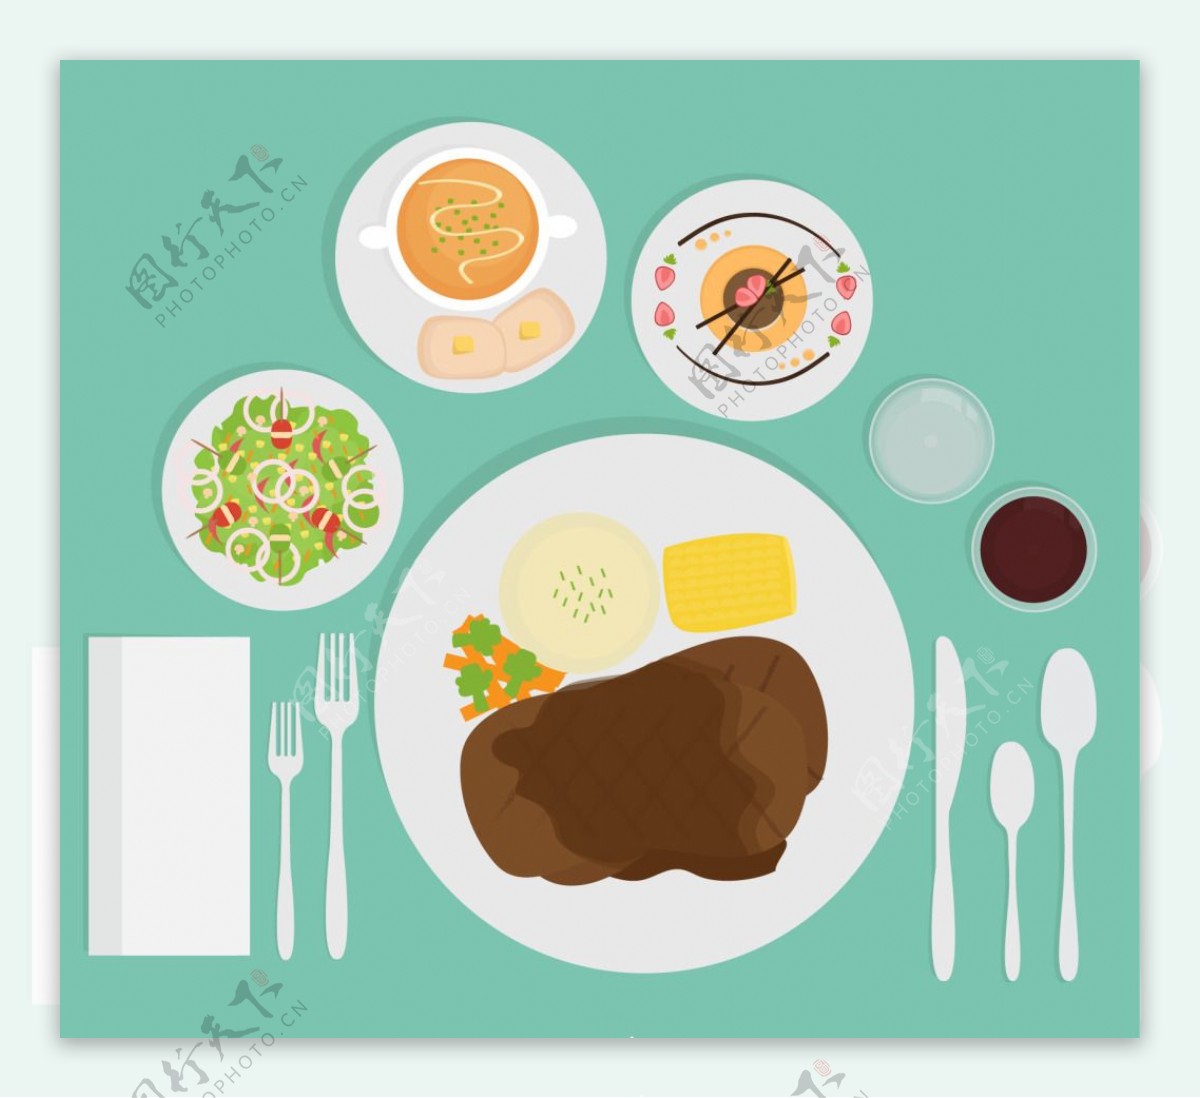 肉盘和餐具食物素材